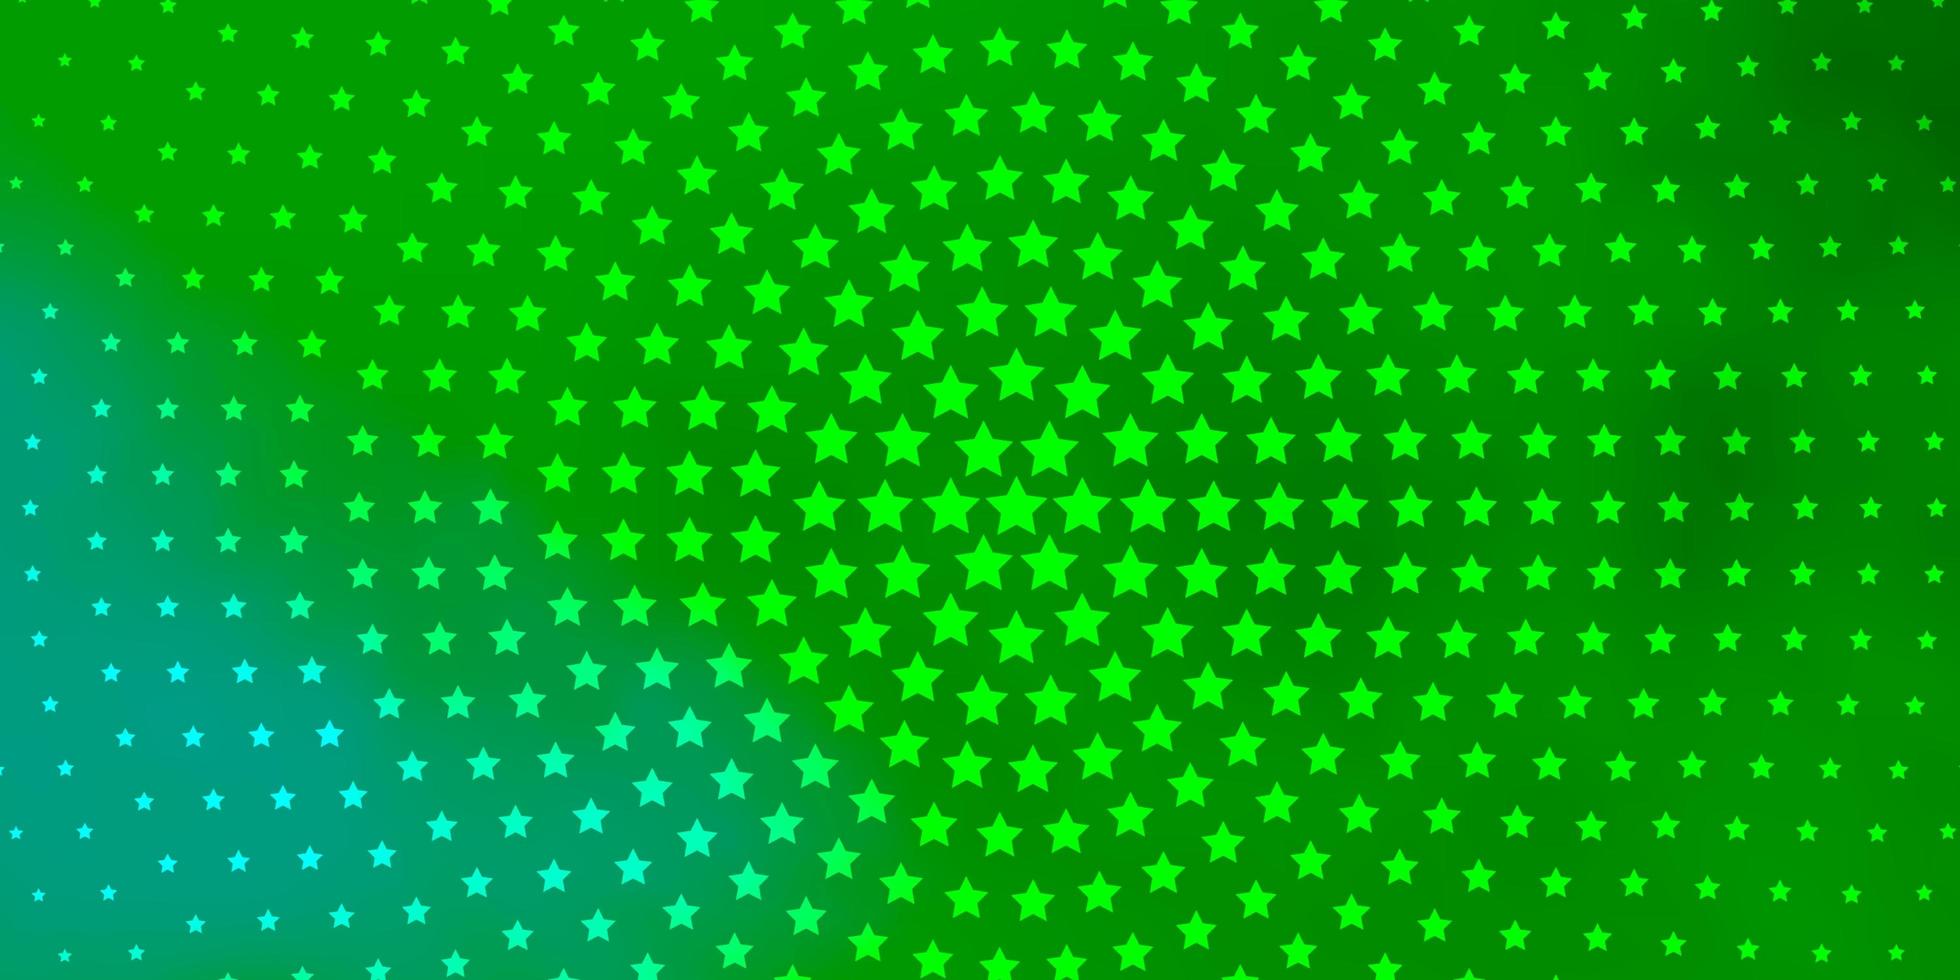 patrón de vector verde claro con estrellas abstractas. difuminar el diseño decorativo en un estilo sencillo con estrellas. patrón para envolver regalos.